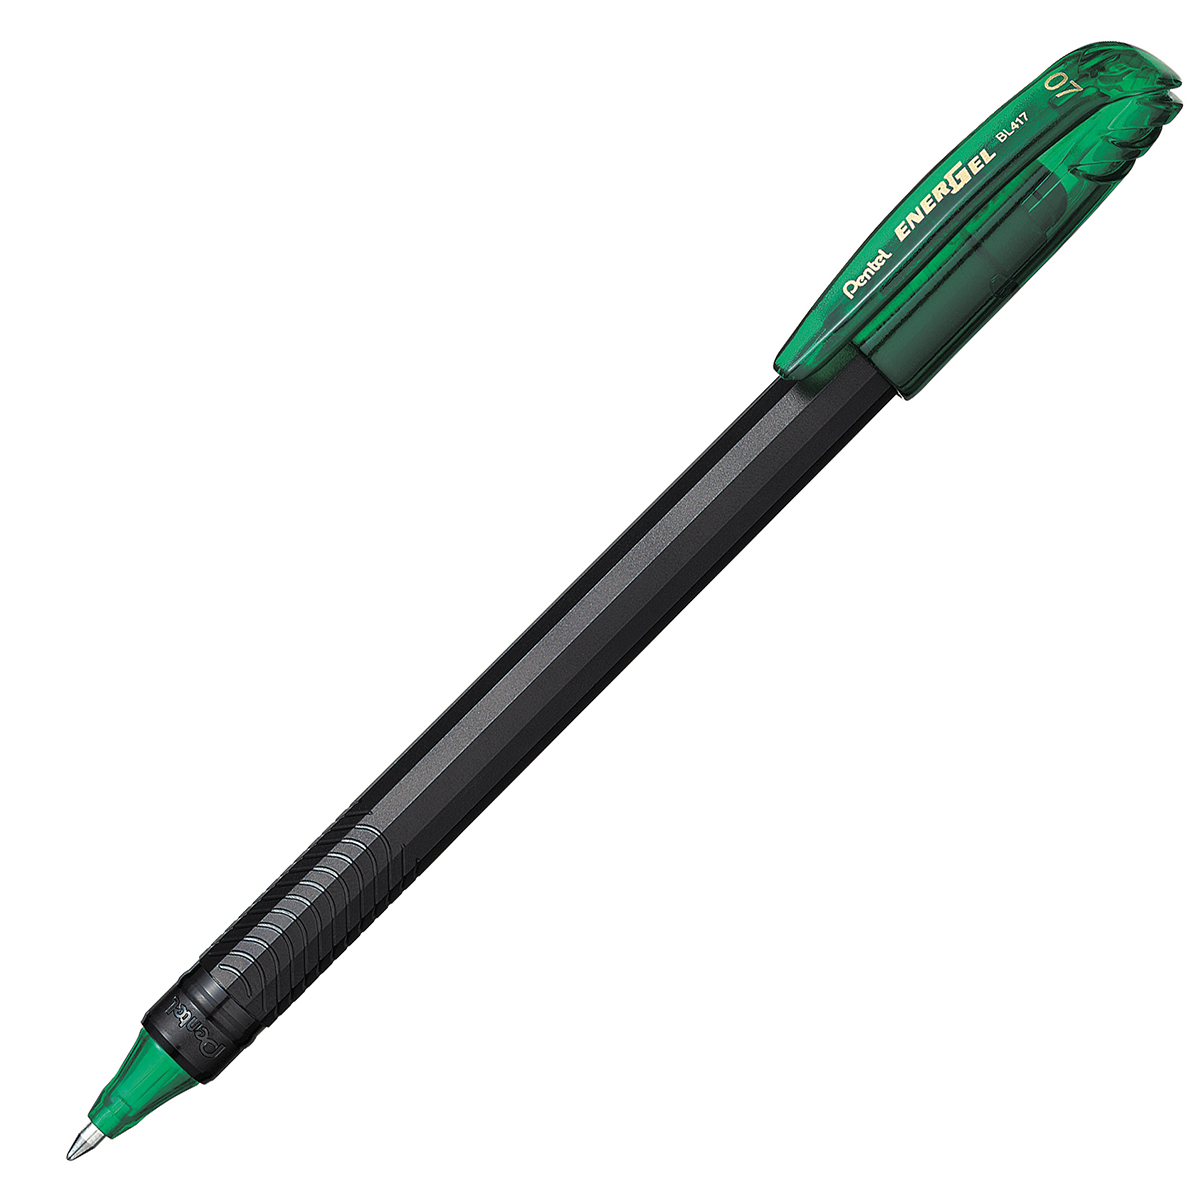 Bolígrafo Pentel energel stick, punto 0. Bolígrafo Pentel energel tinta gel color verde, 0.7 mm secado rápido, peso ligero con 12 lados, hecho de 62% material reciclado. la tapa indica el color de la tinta                                                                                            7 mm (mediano), tinta verde, 1 pieza     - PENTEL